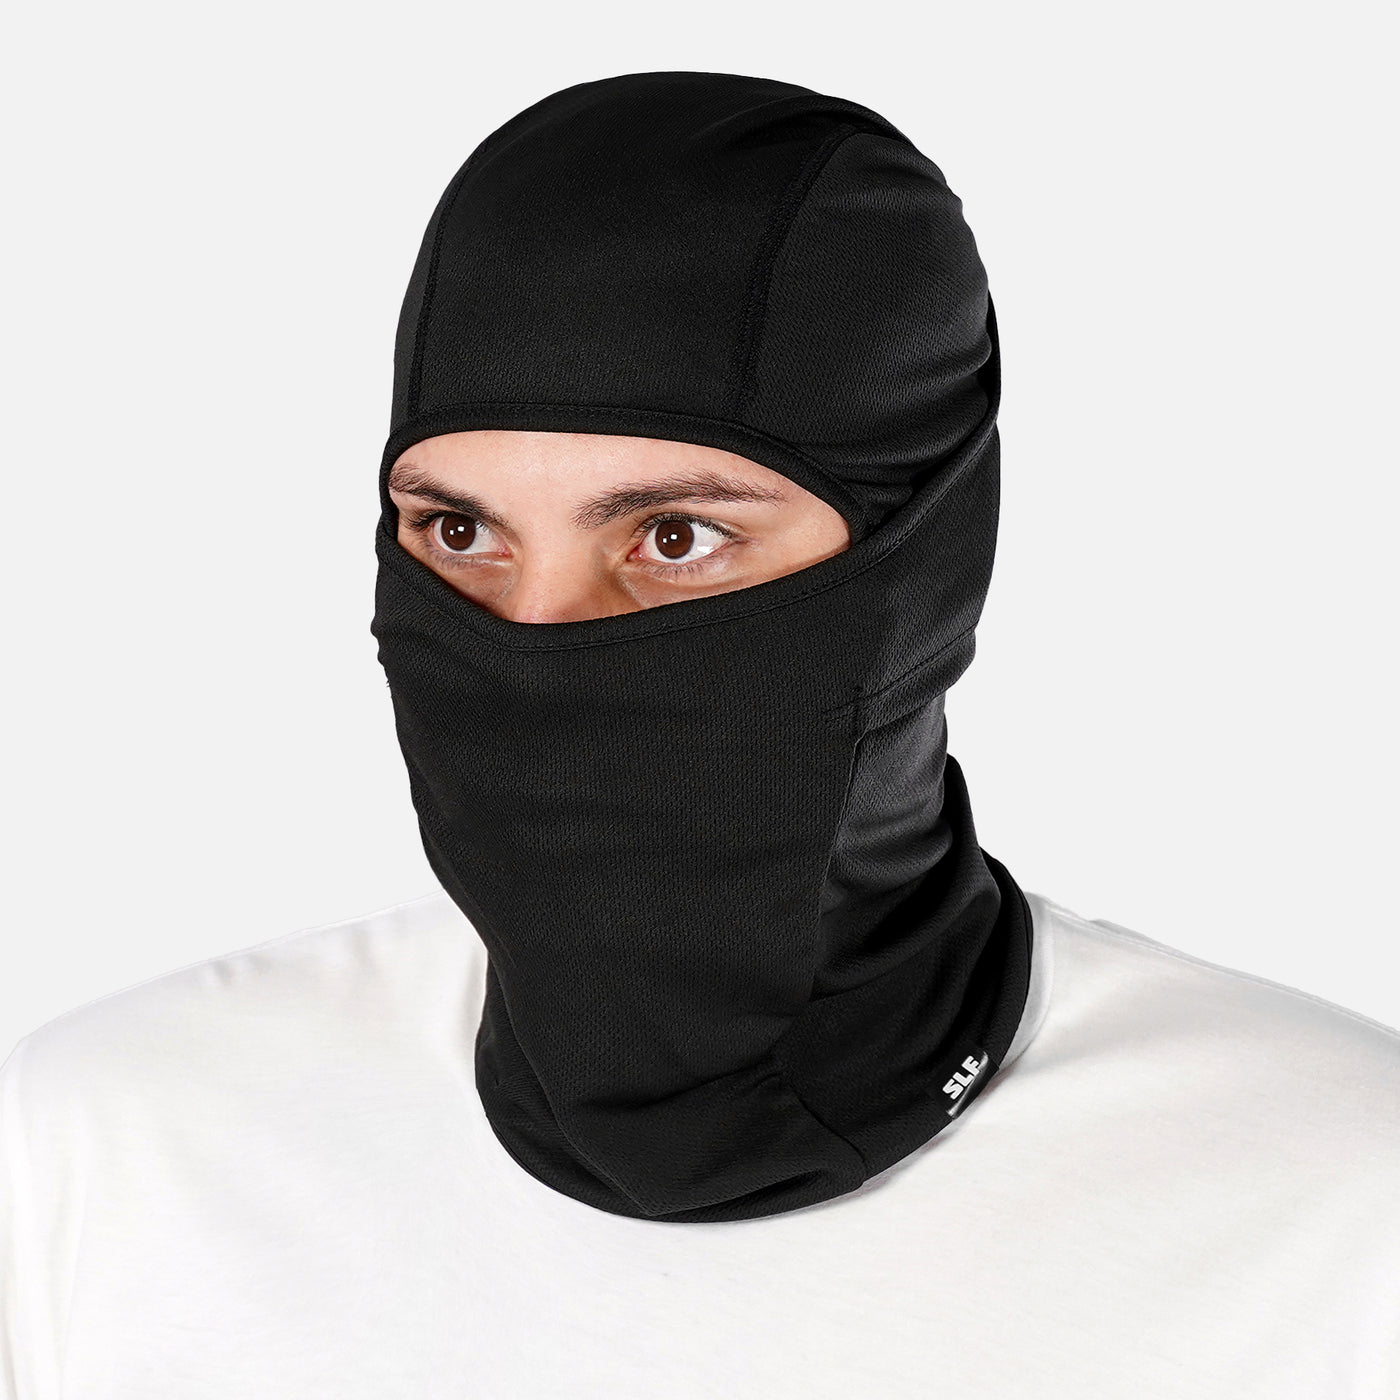 Basic Black Loose-fitting Shiesty Mask